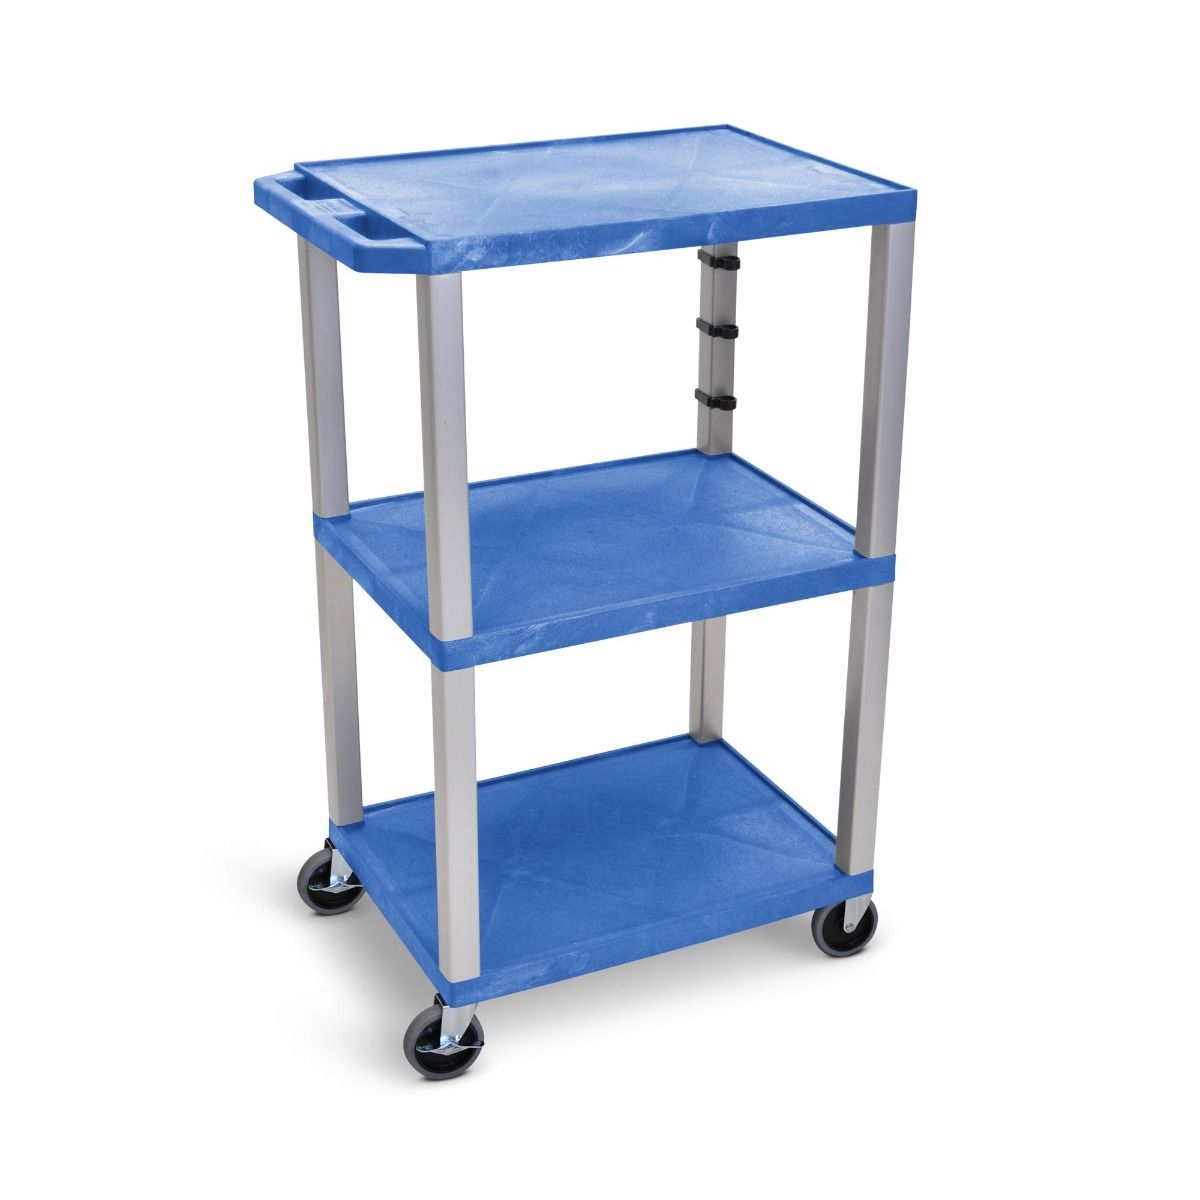 Luxor 42" High 3-Shelf Utility Carts [Blue Shelves] Image 1